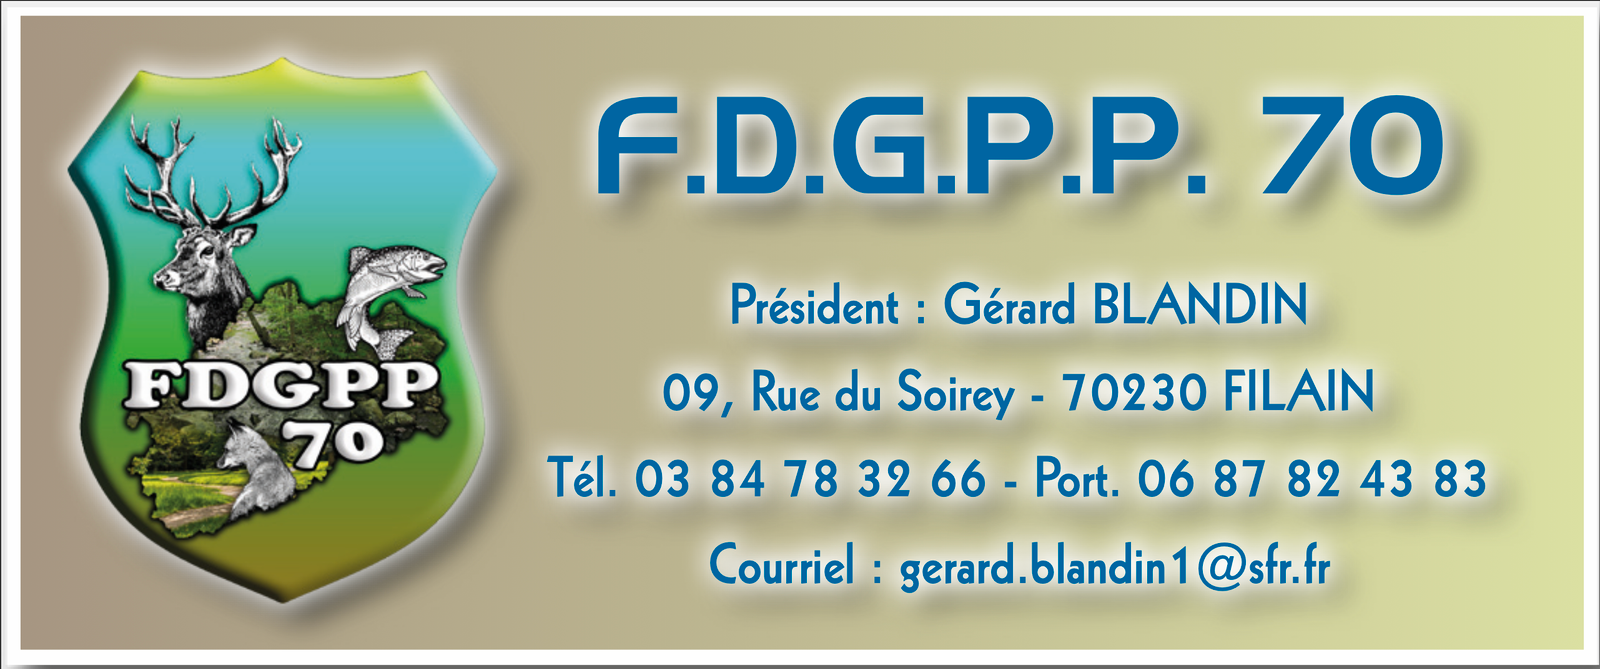 FDGPP 70